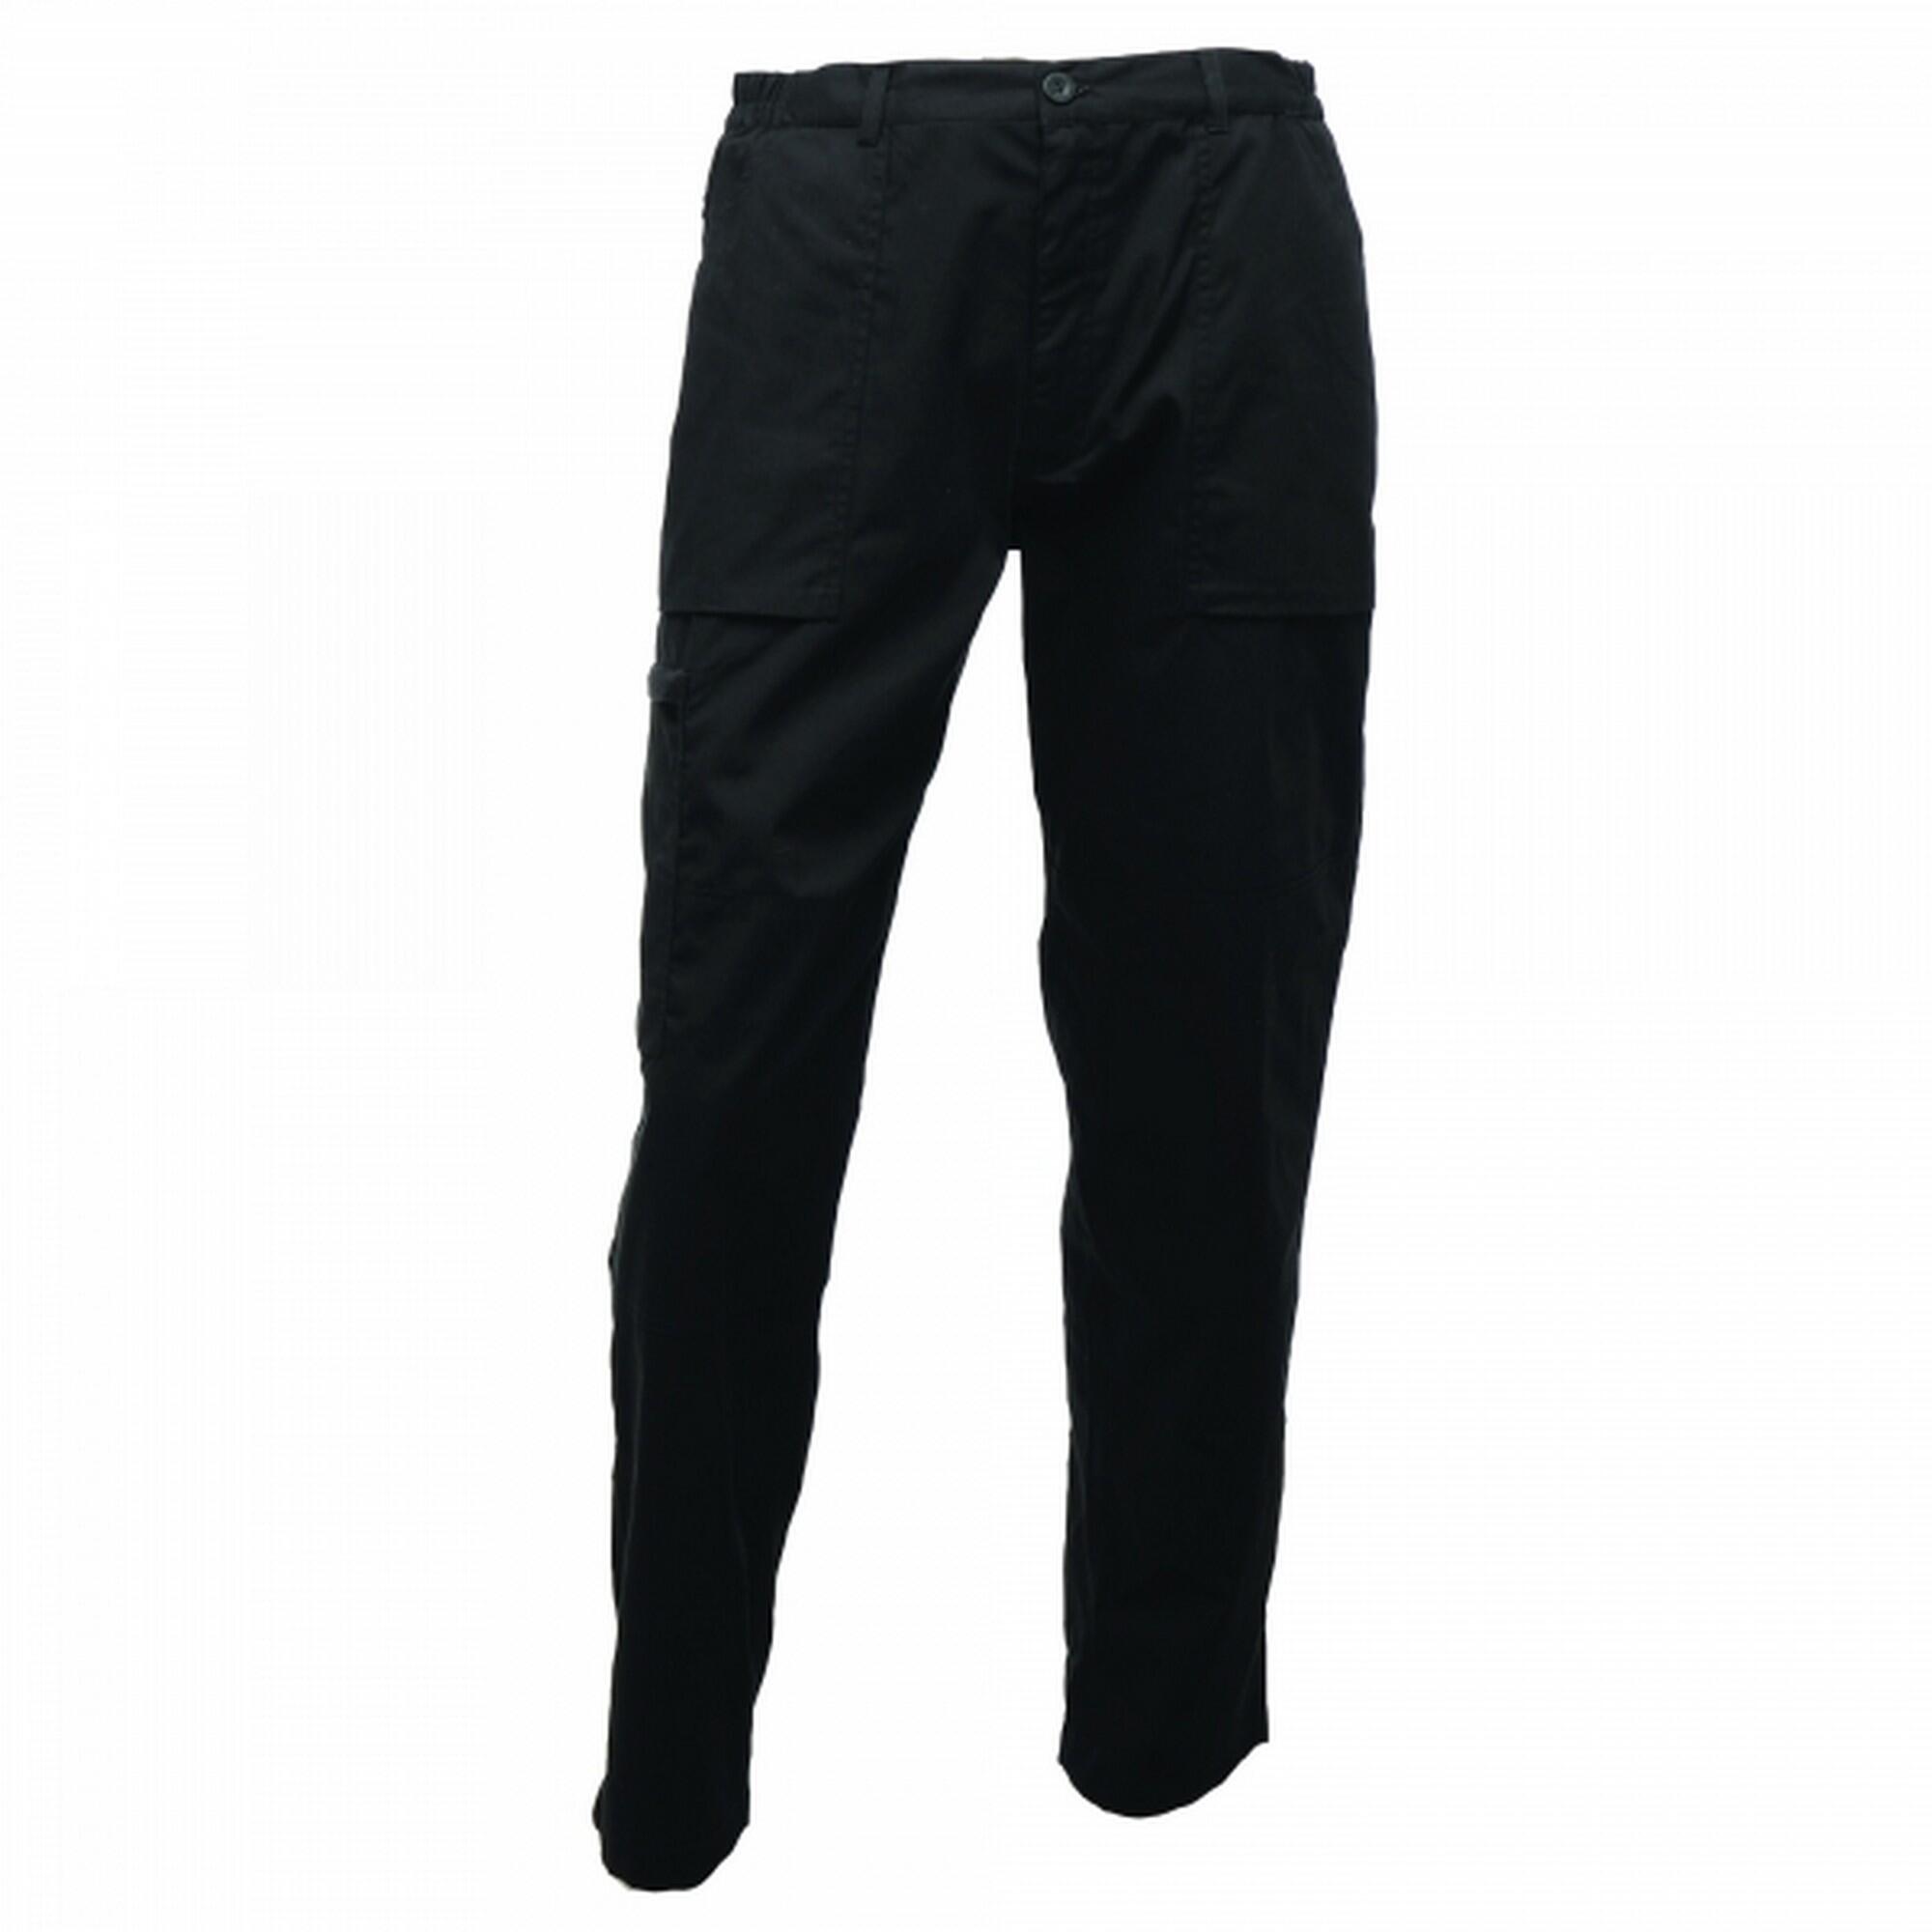 Mens Action Waterproof Trousers (Black) 2/5